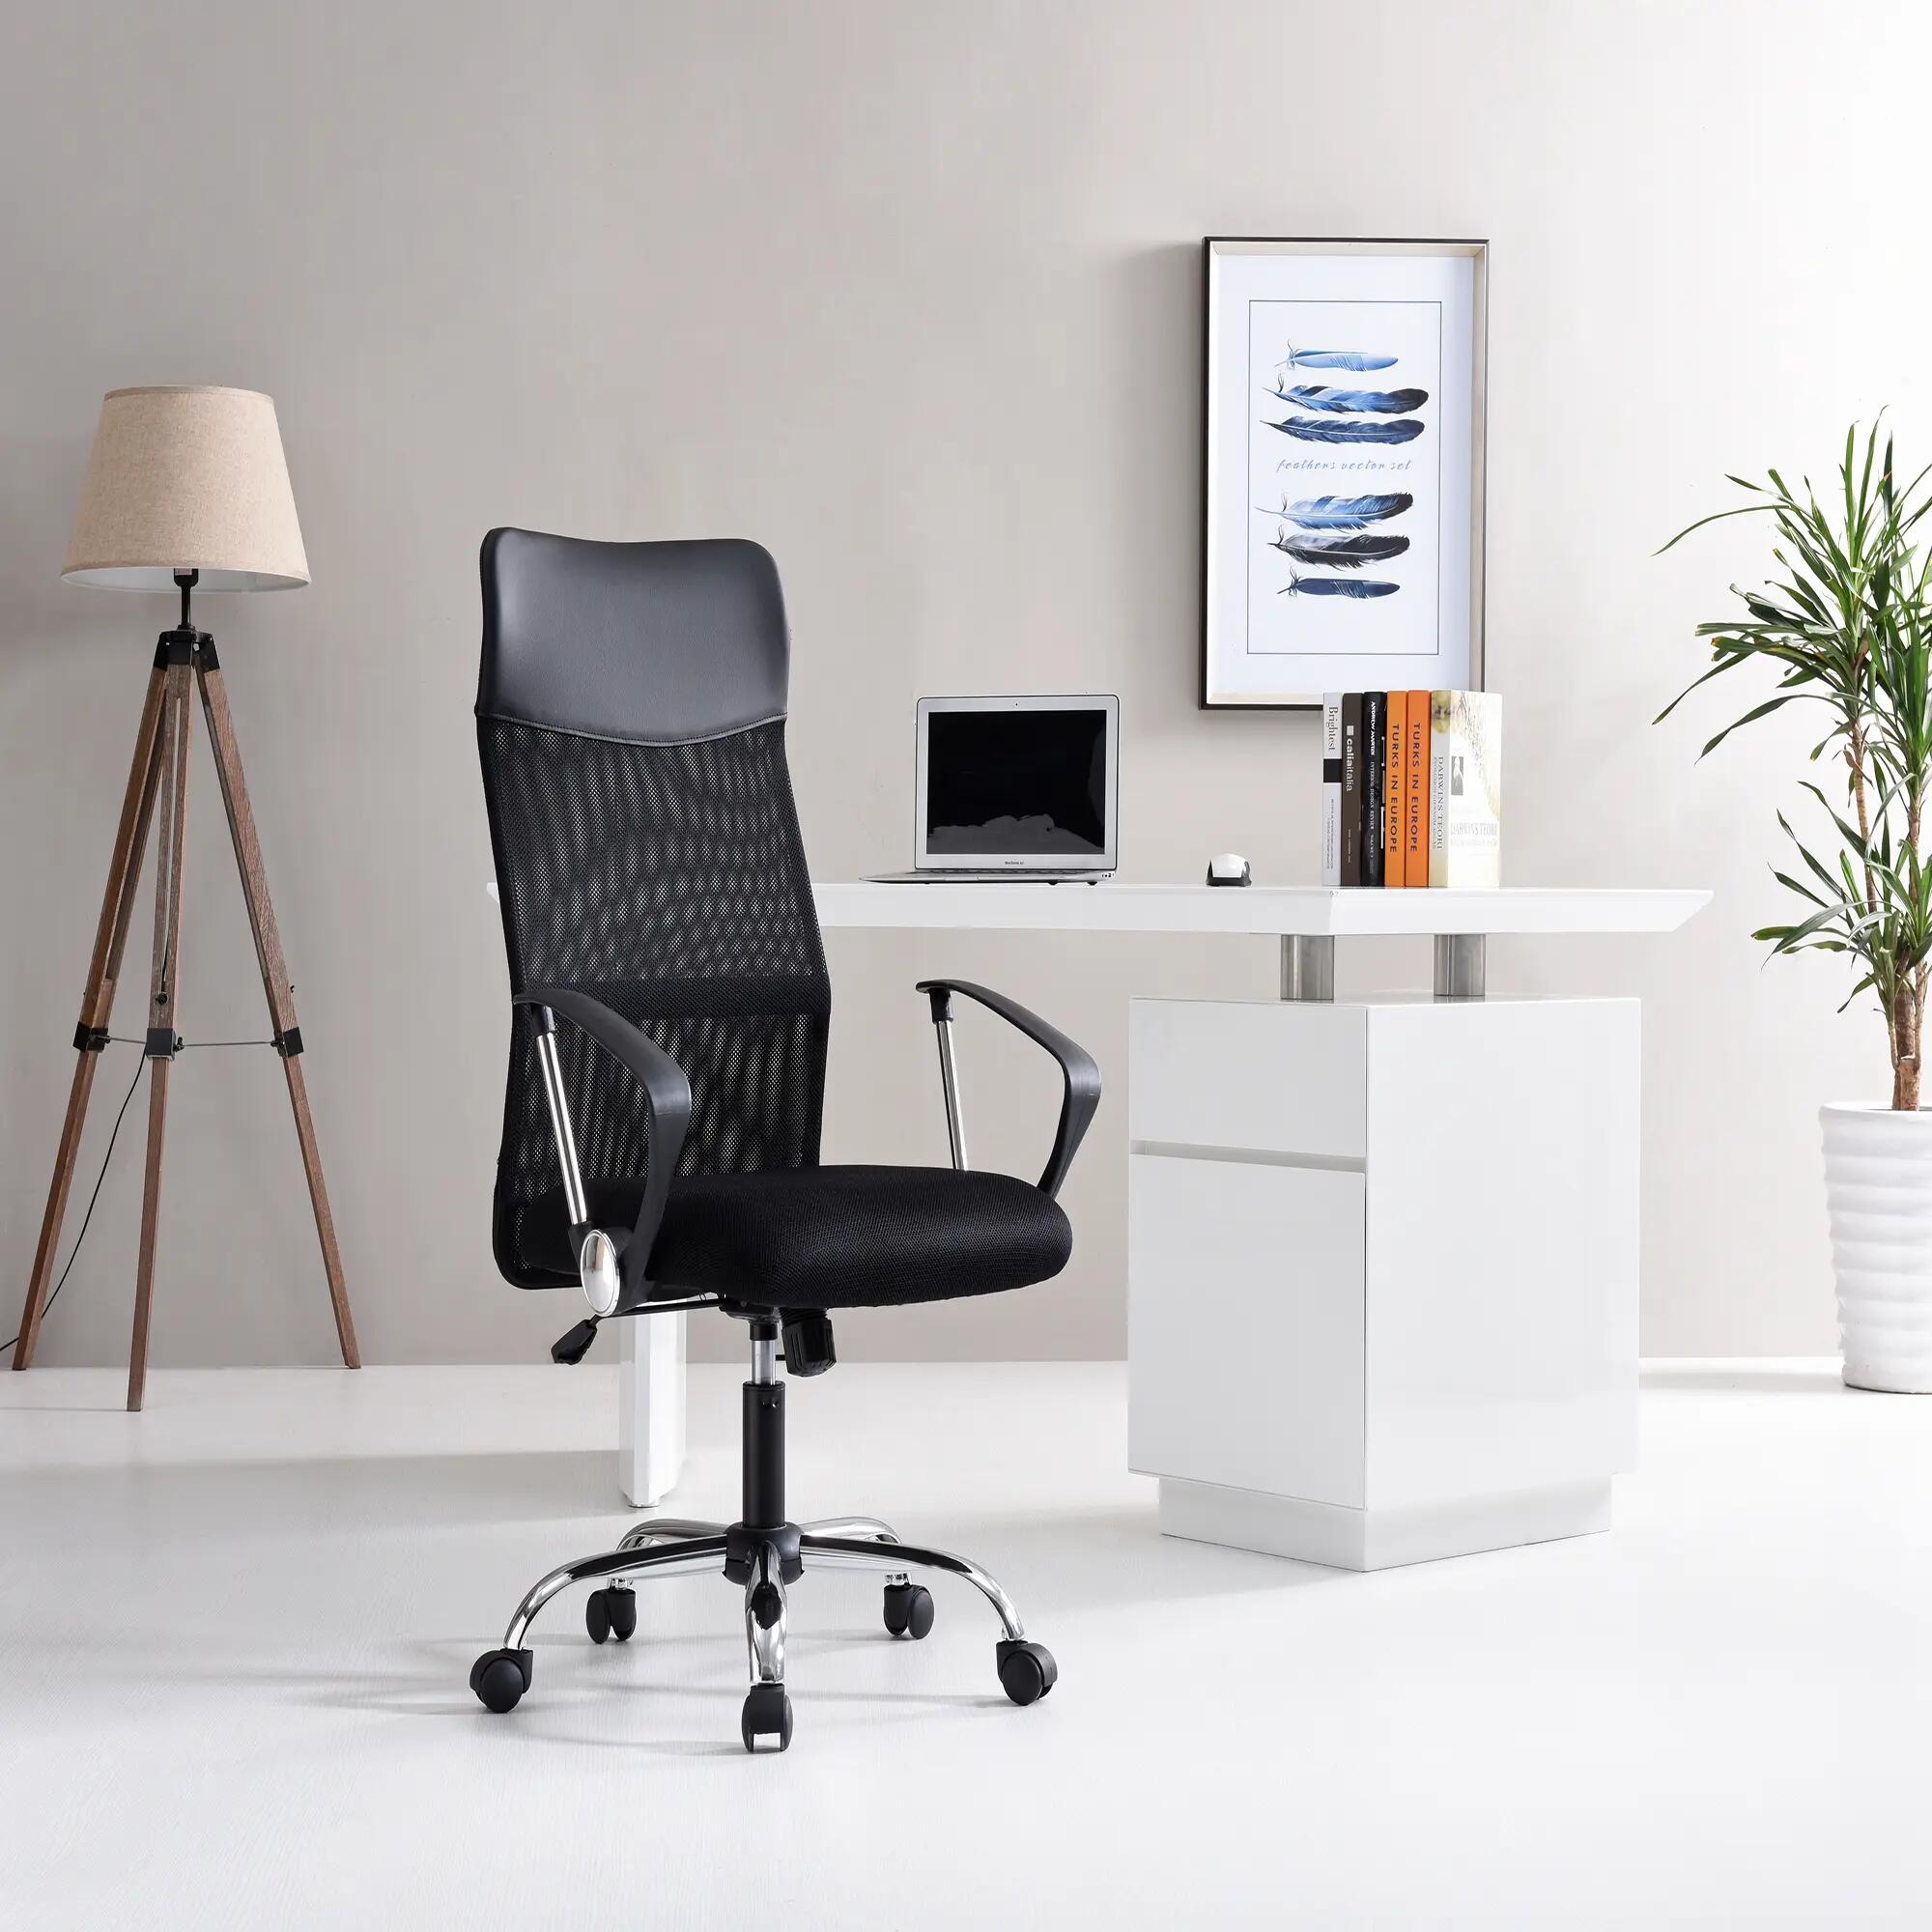 Sillas escritorio y oficina | Merlin